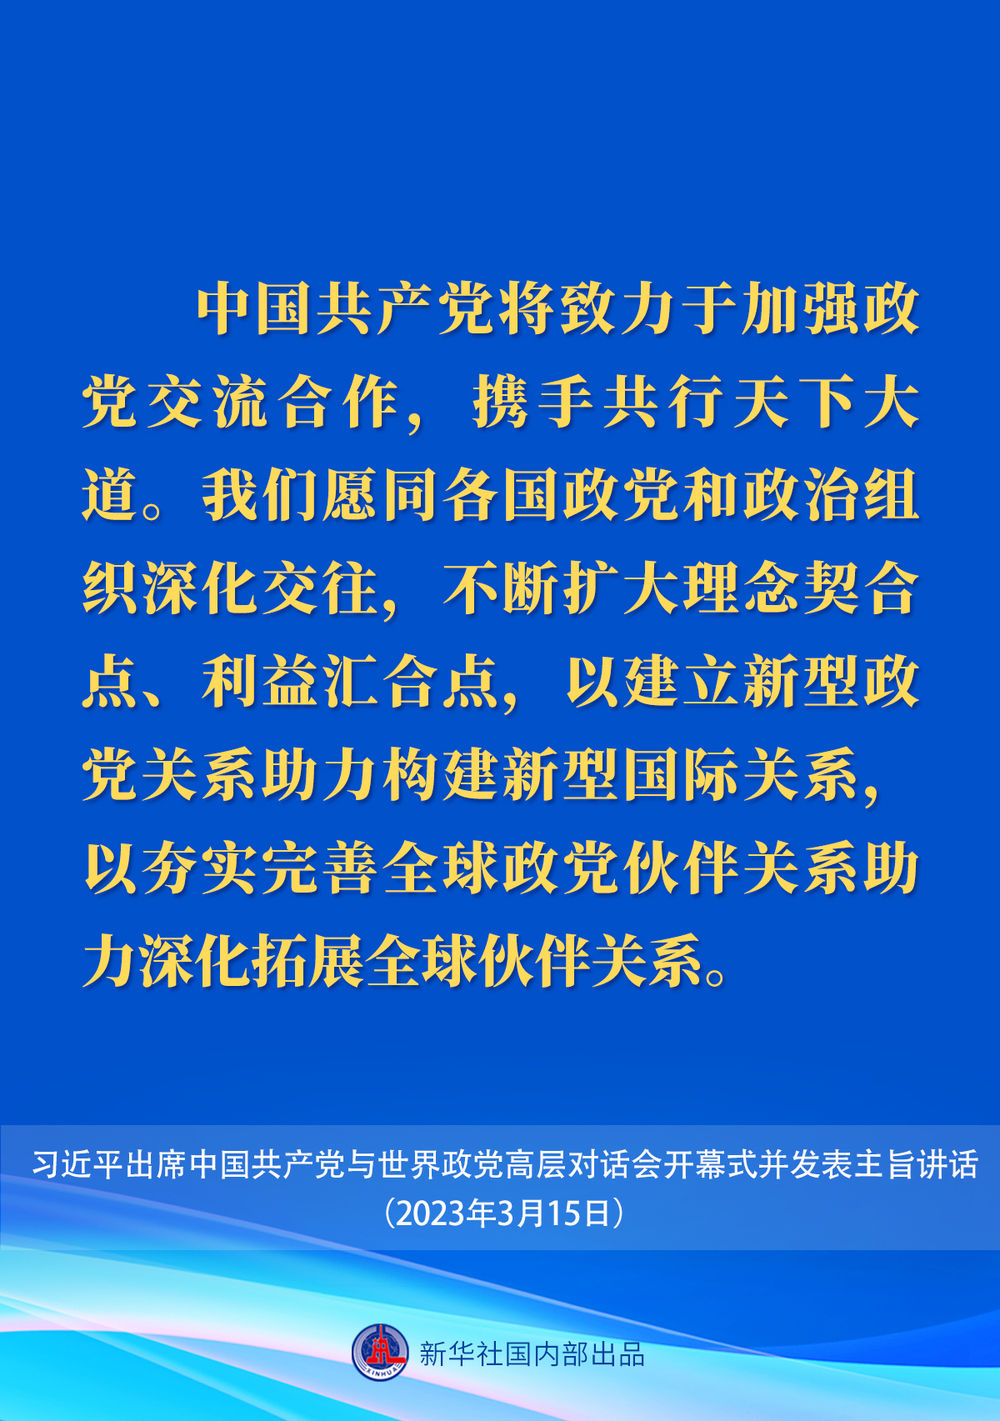 习近平在中国共产党与世界政党高层对话会上的主旨讲话要点12.jpeg